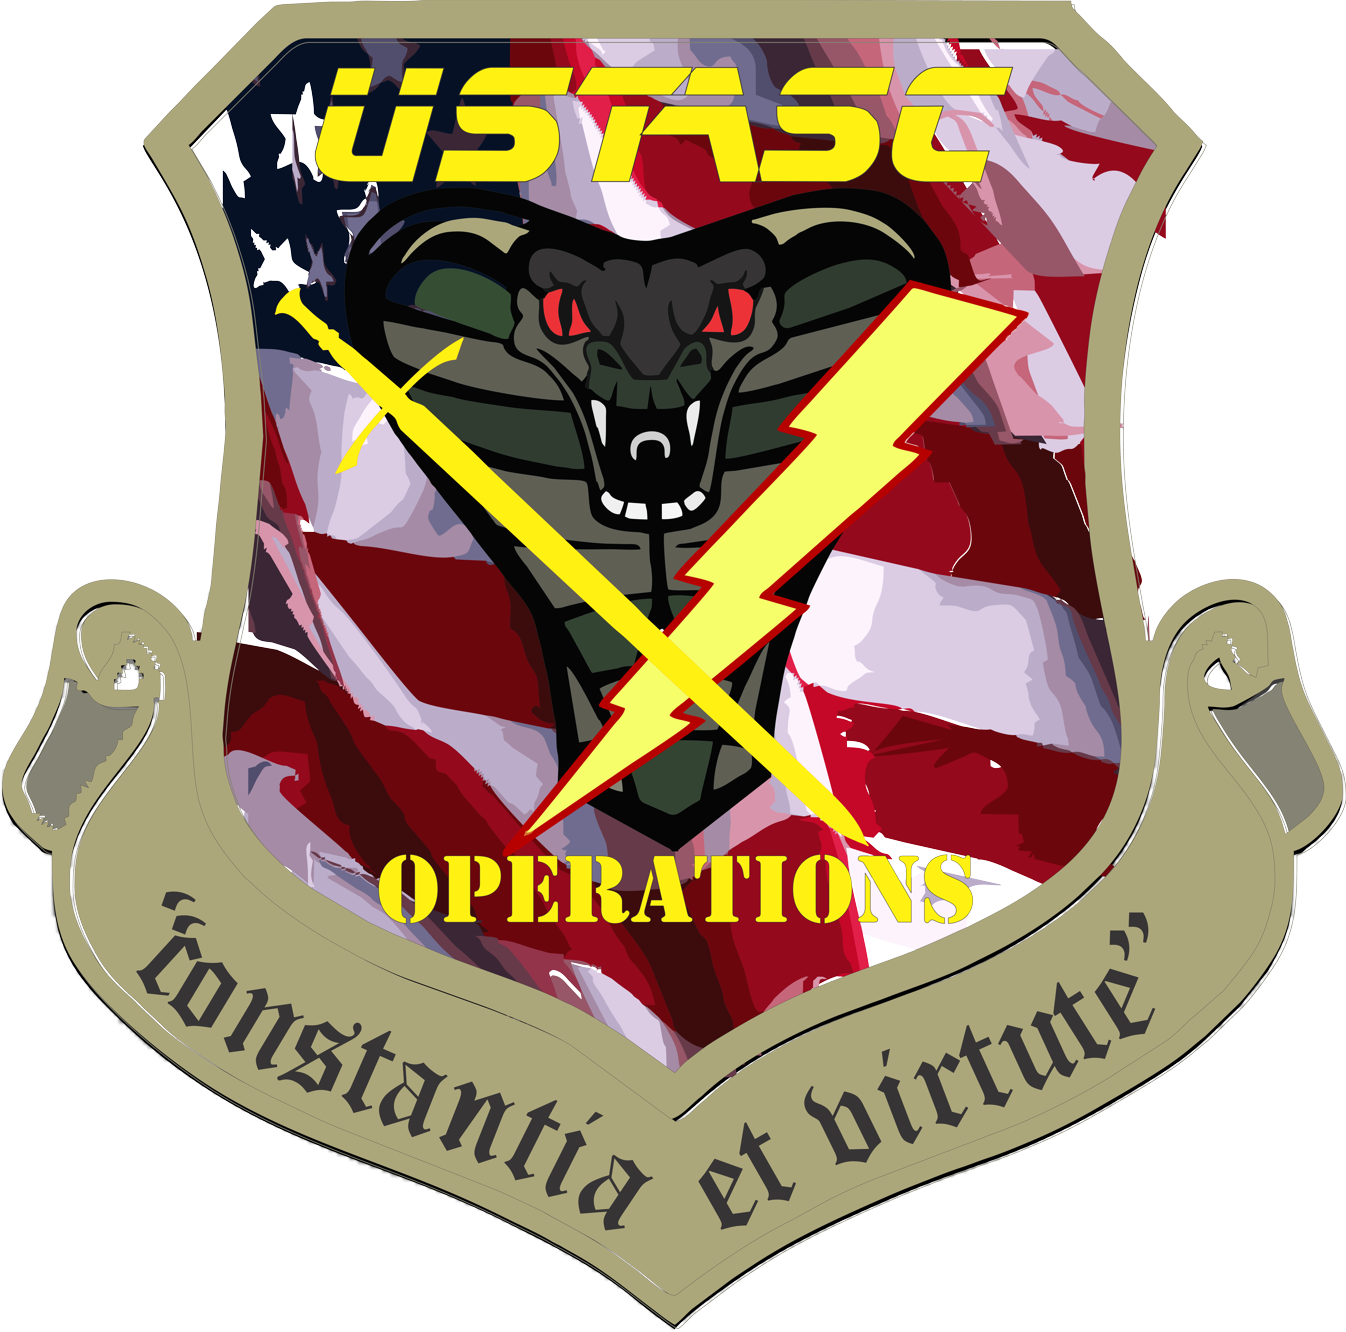 USTASC setzt Keycafe zur Verwaltung von Nachtpatrouillen-Fahrzeugen ein